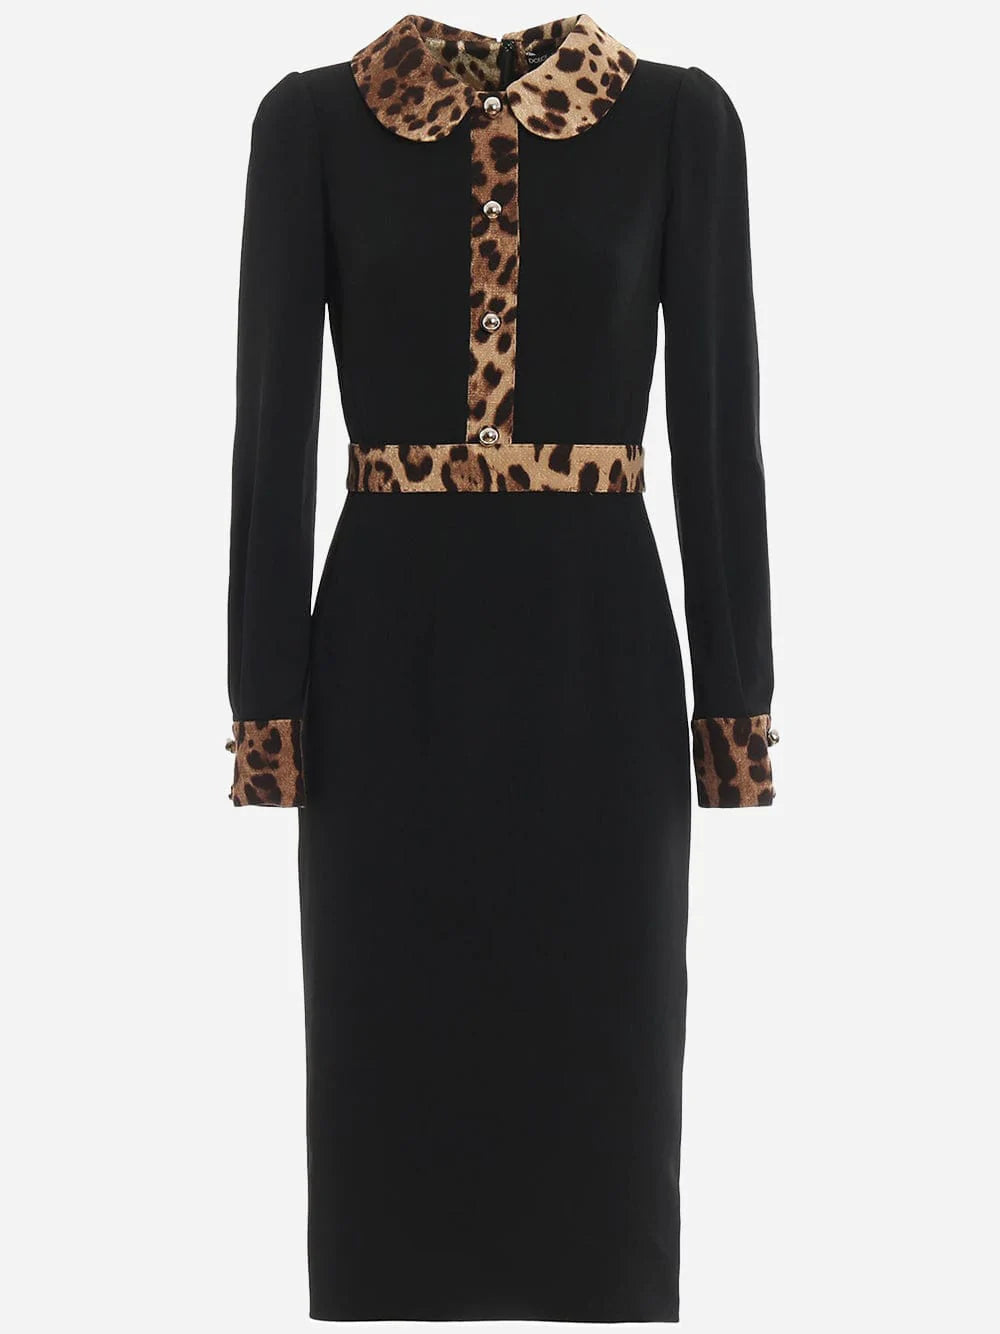 Dolce & Gabbana Leopard-Print Trim Midi Dress